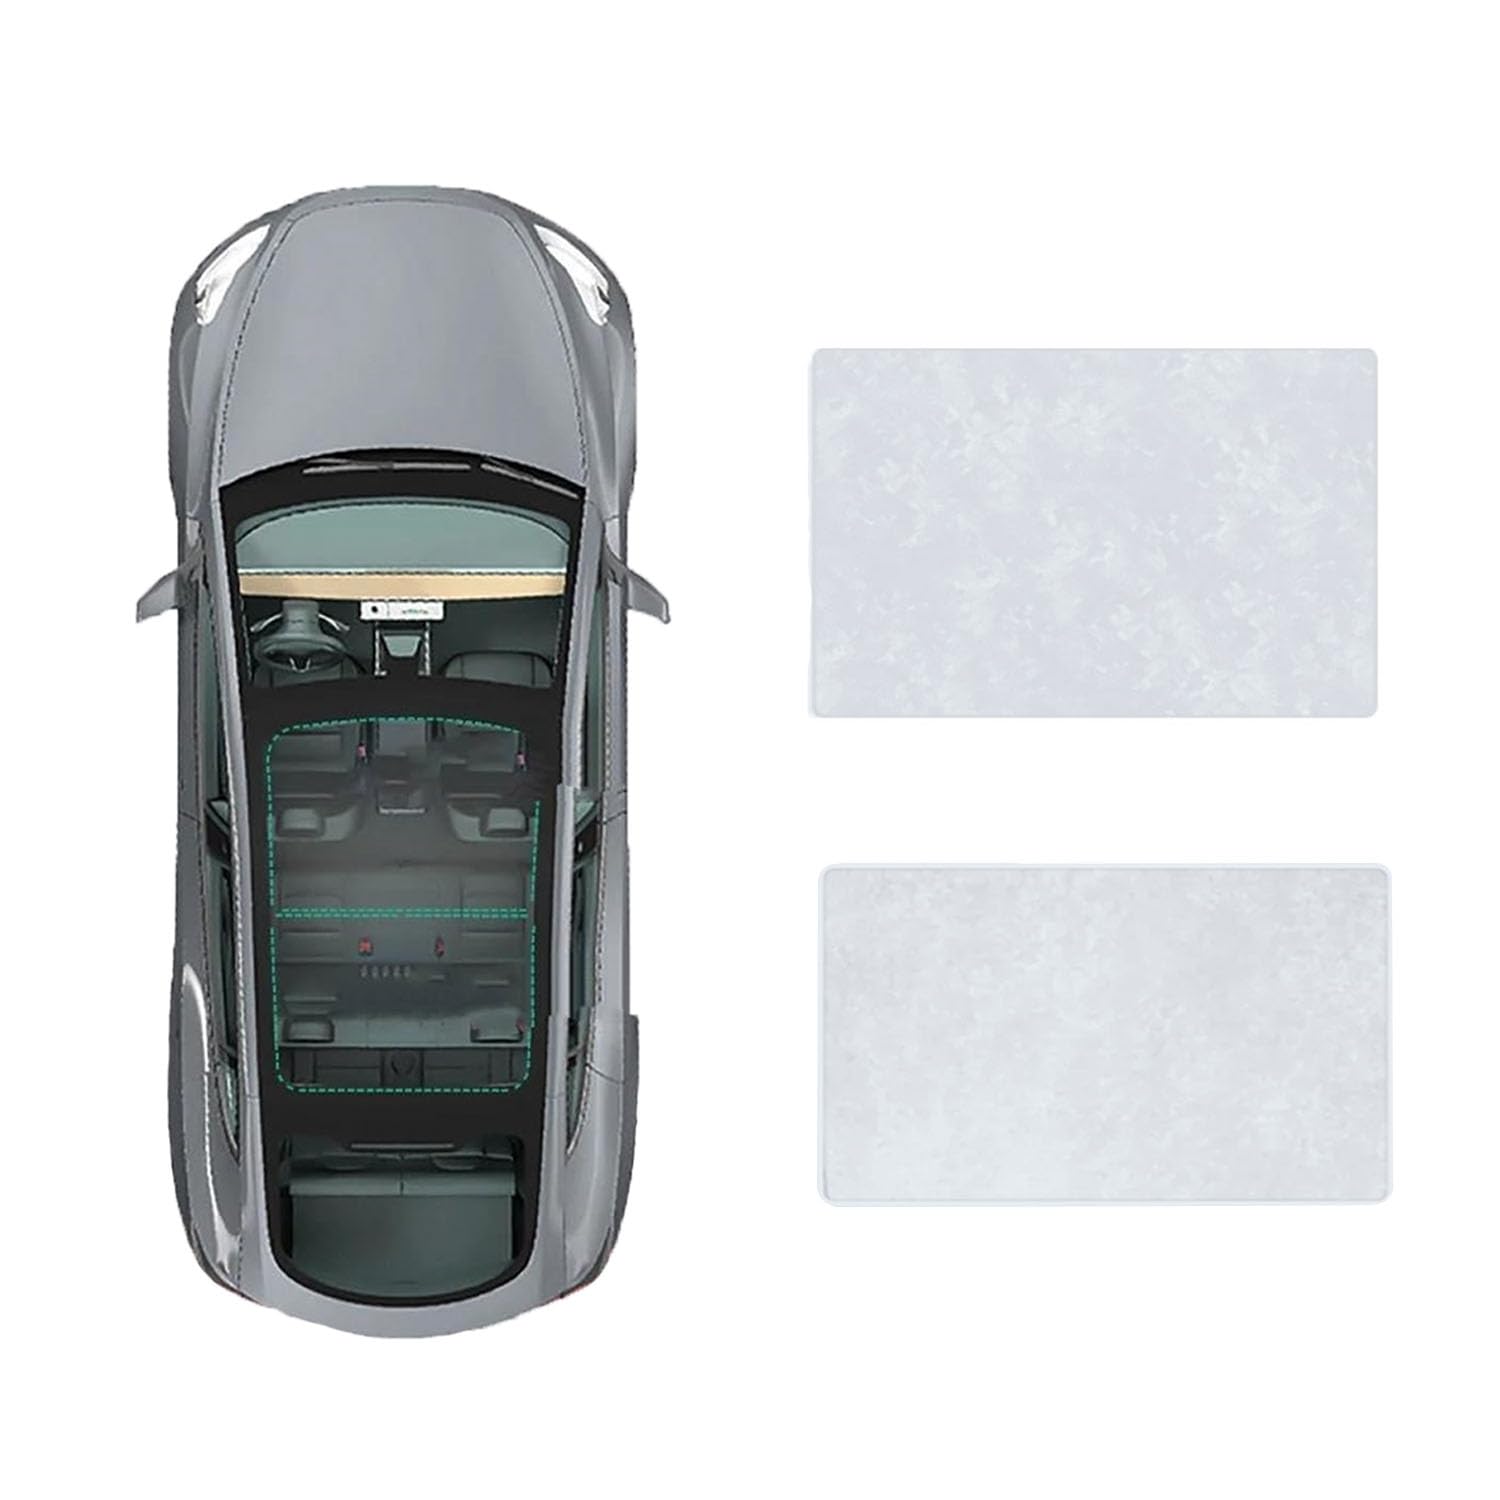 Auto-Schiebedach-Beschattung Für BMW X1 2010-2015,Auto Schiebedach Sonnenschutz Dachfenster Dach Wärme Isolierung Beschattung Innen,B-Gray white Suede von LiuROSE